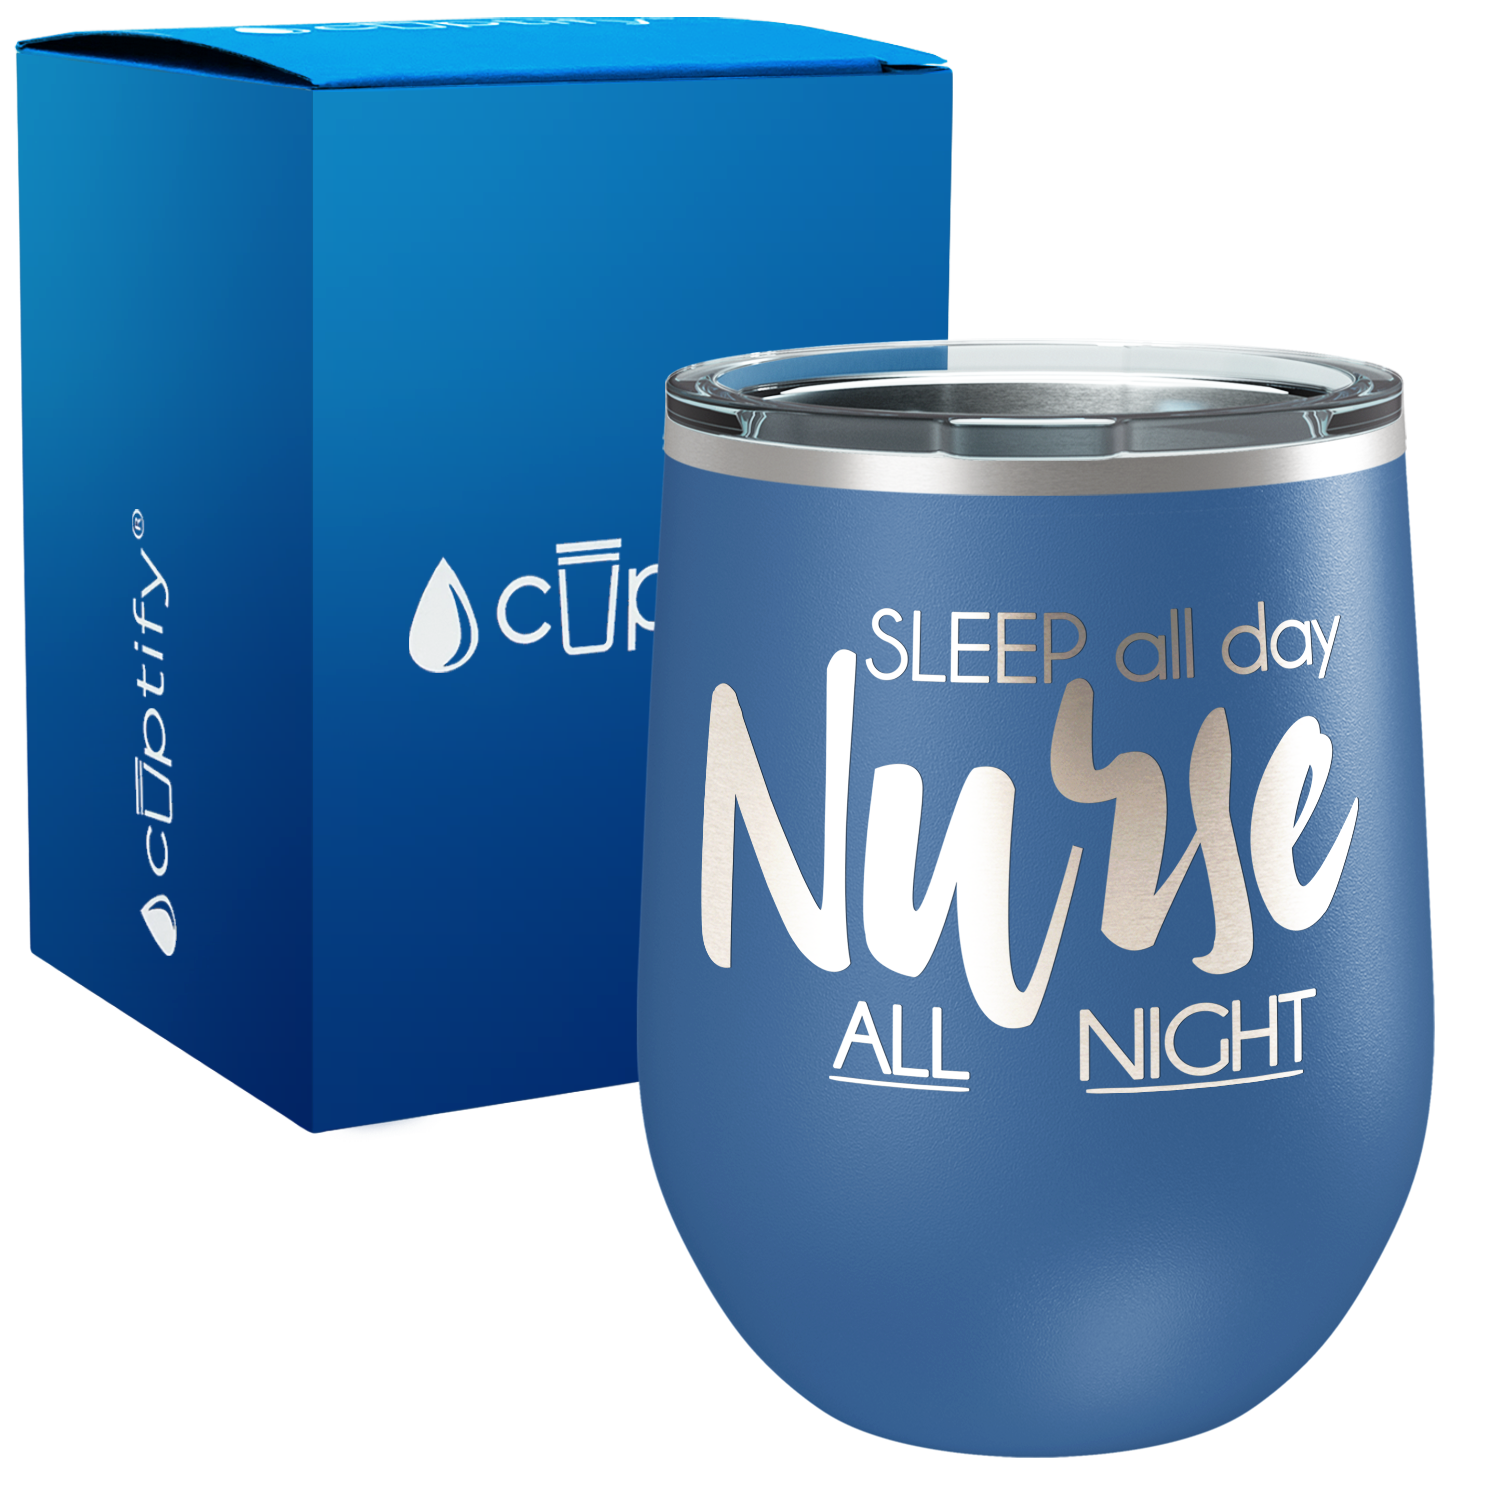 Sleep all Day Nurse All Night 12oz Nurse Wine Tumbler